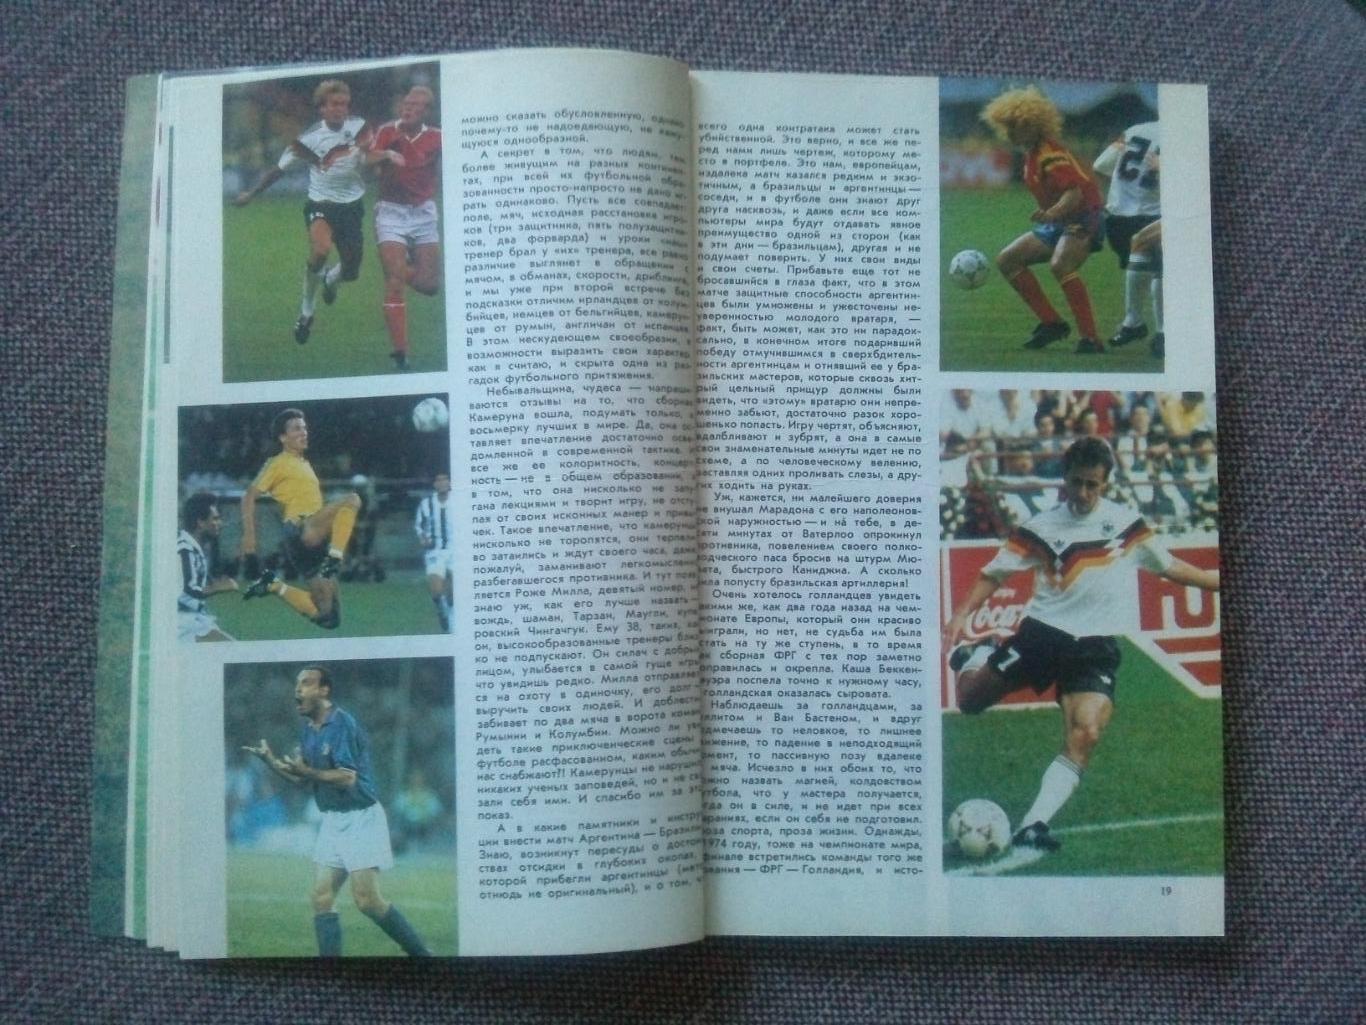 Альманах Футбол - 91 1991 г. Справочник (Спорт)ФиС(чемпионат Мира 1990) 7